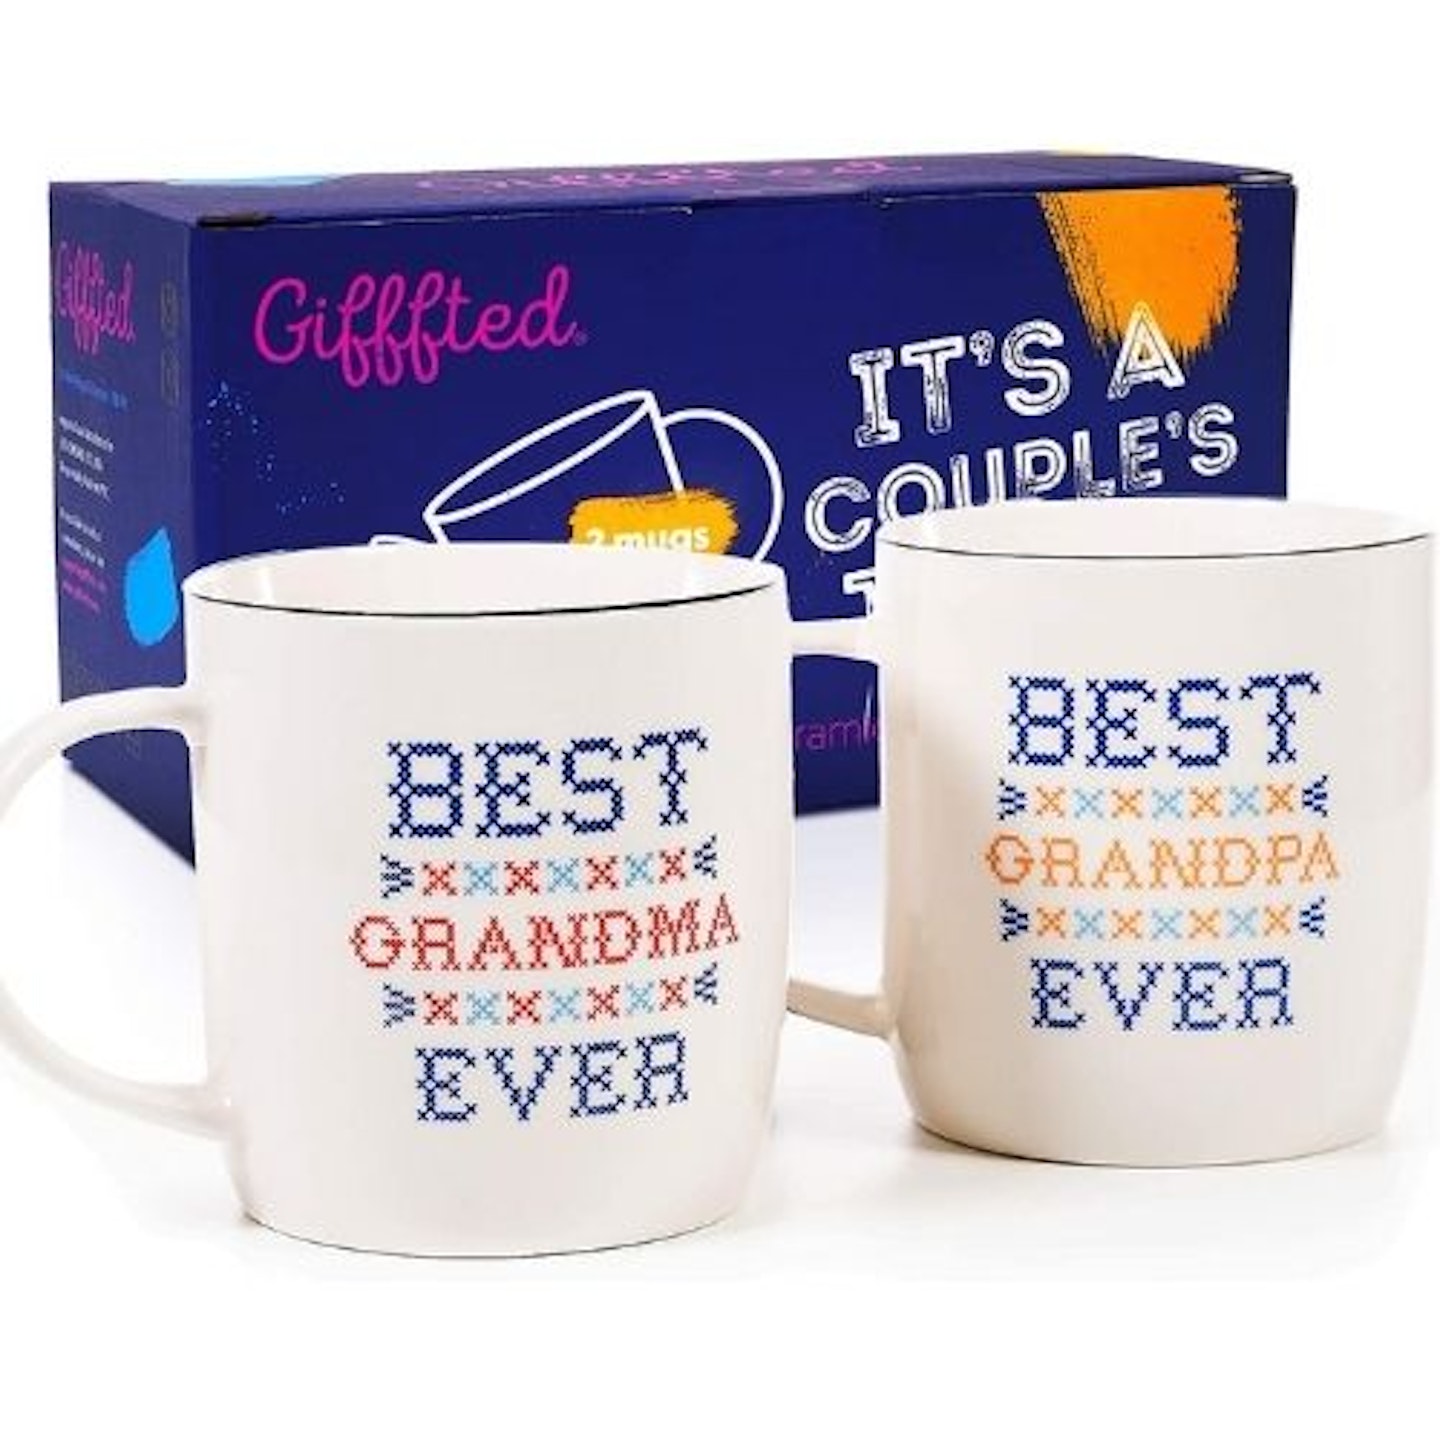 grandparent mugs